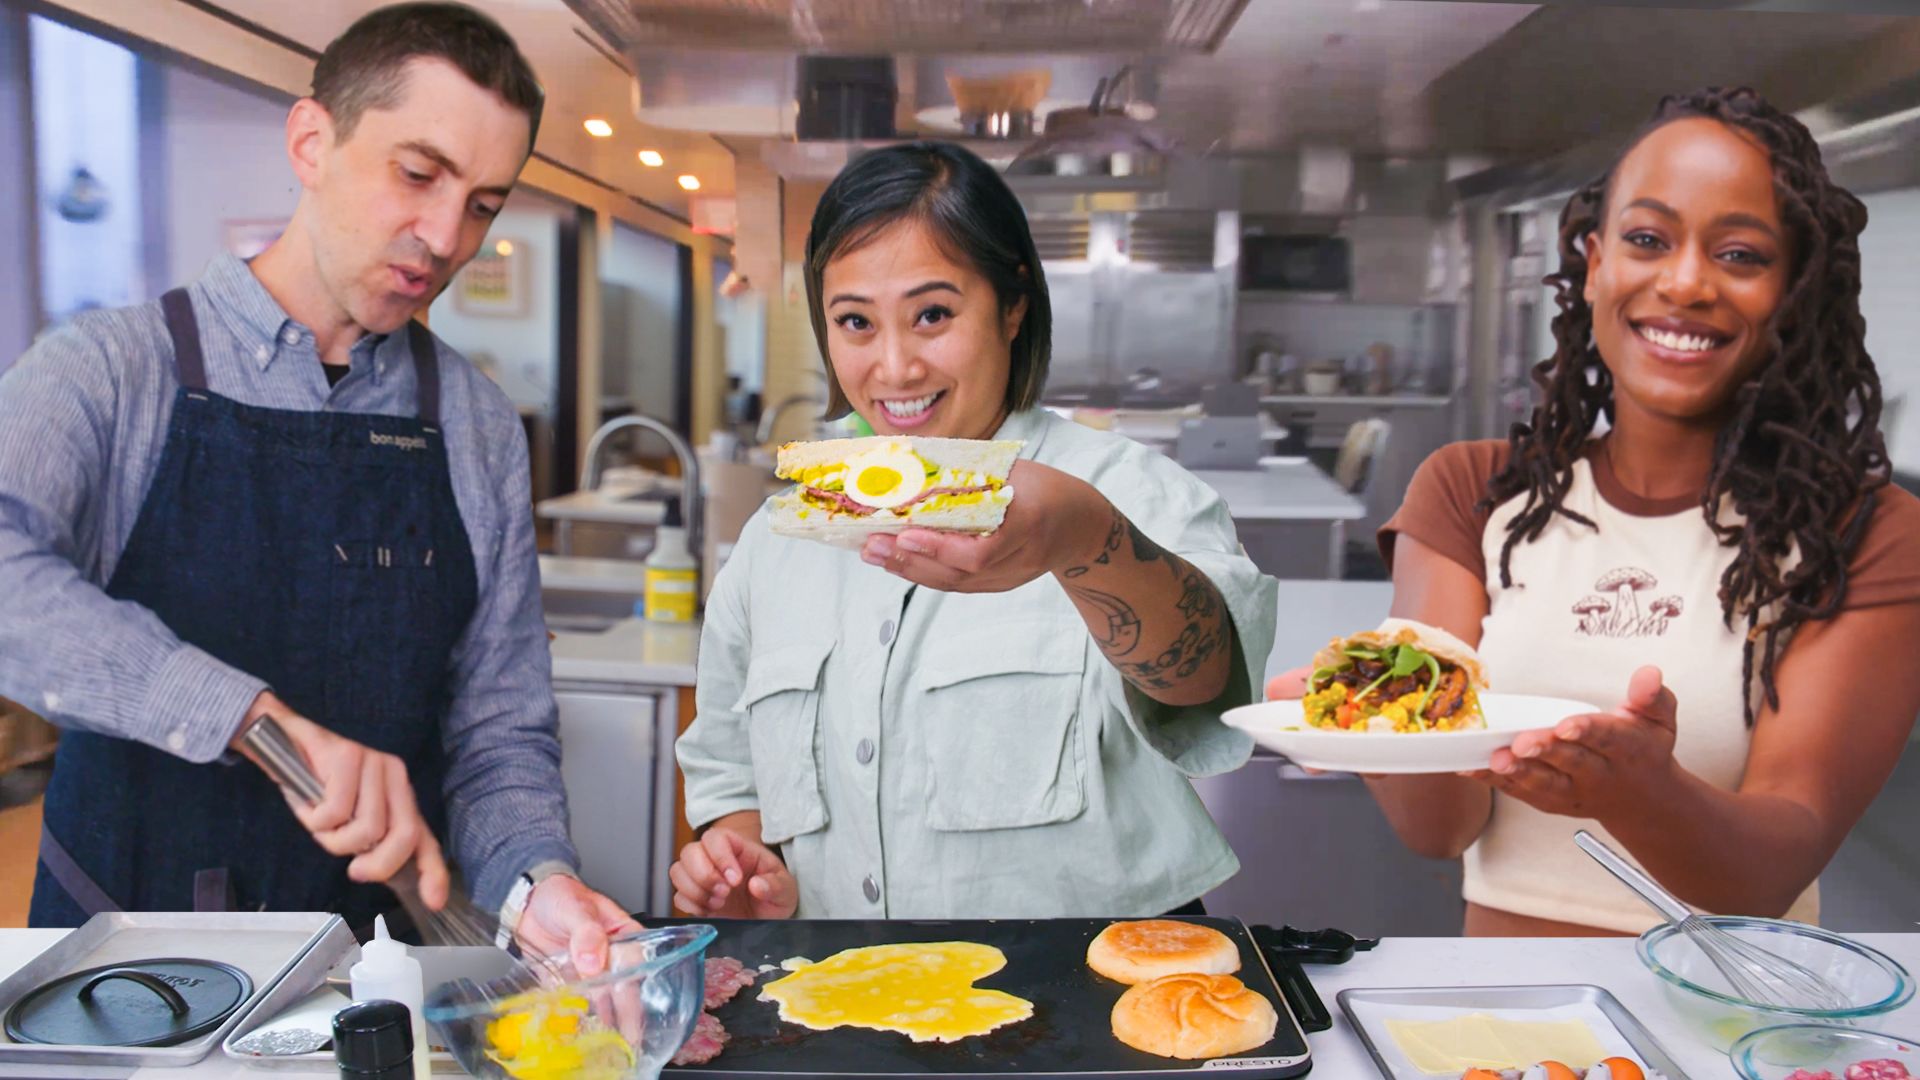 Watch 6 Sandwich Kitchen Make Chefs | Bon Their Pro Appétit Breakfast Go-To Test Talks 